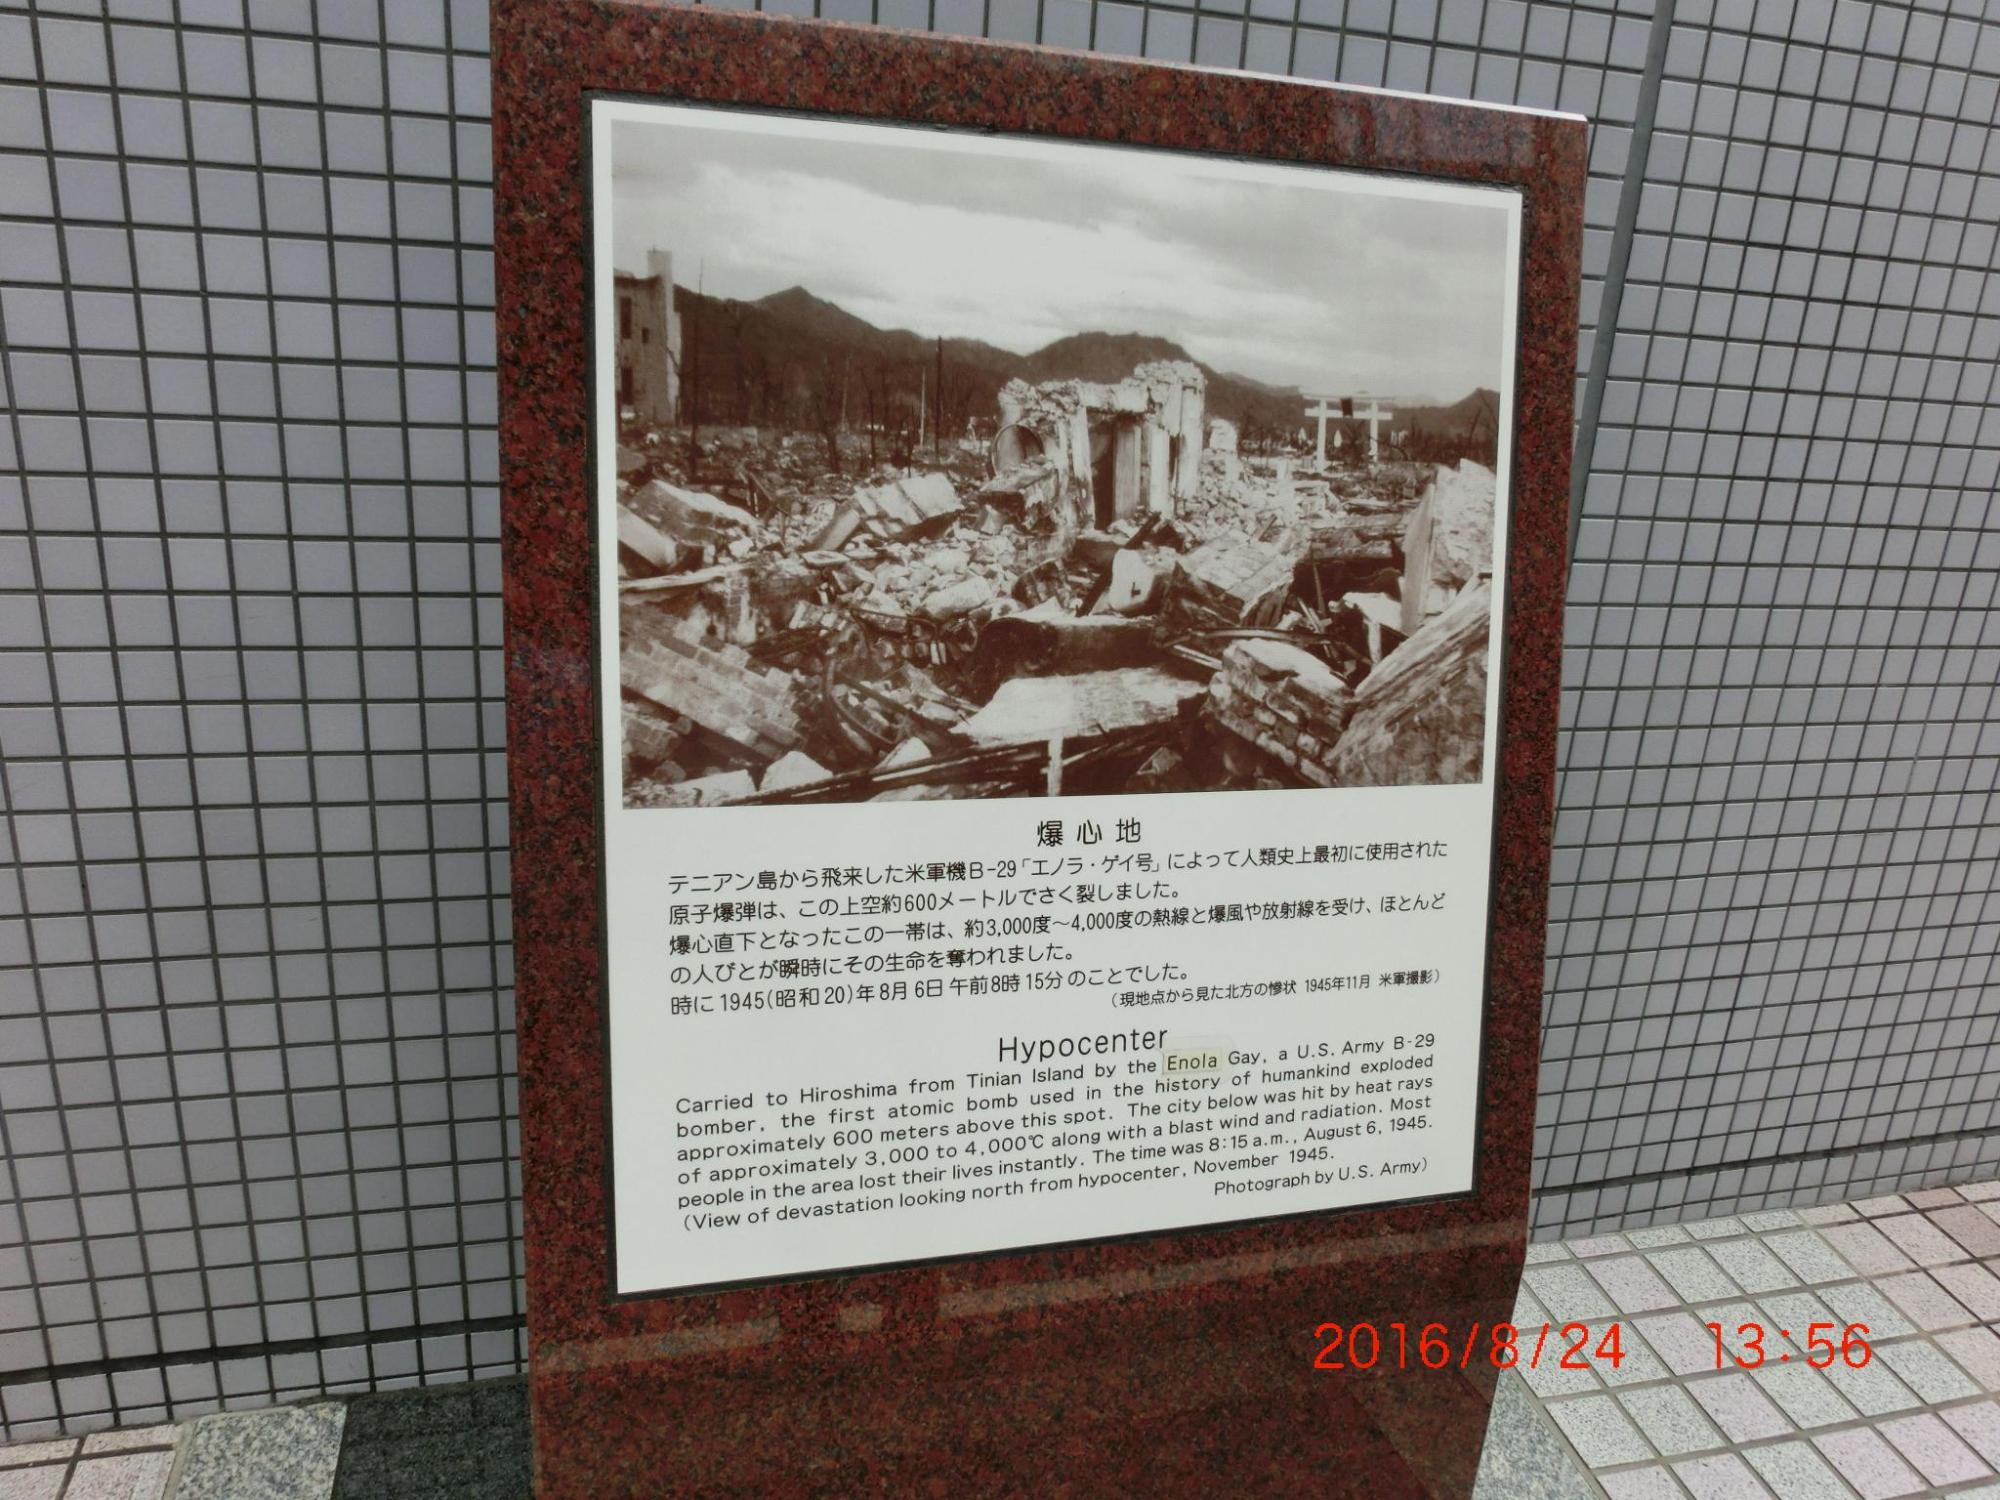 原子爆弾によって破壊された広島の様子が写っている爆心地の写真とその下に説明が書かれている展示物の写真